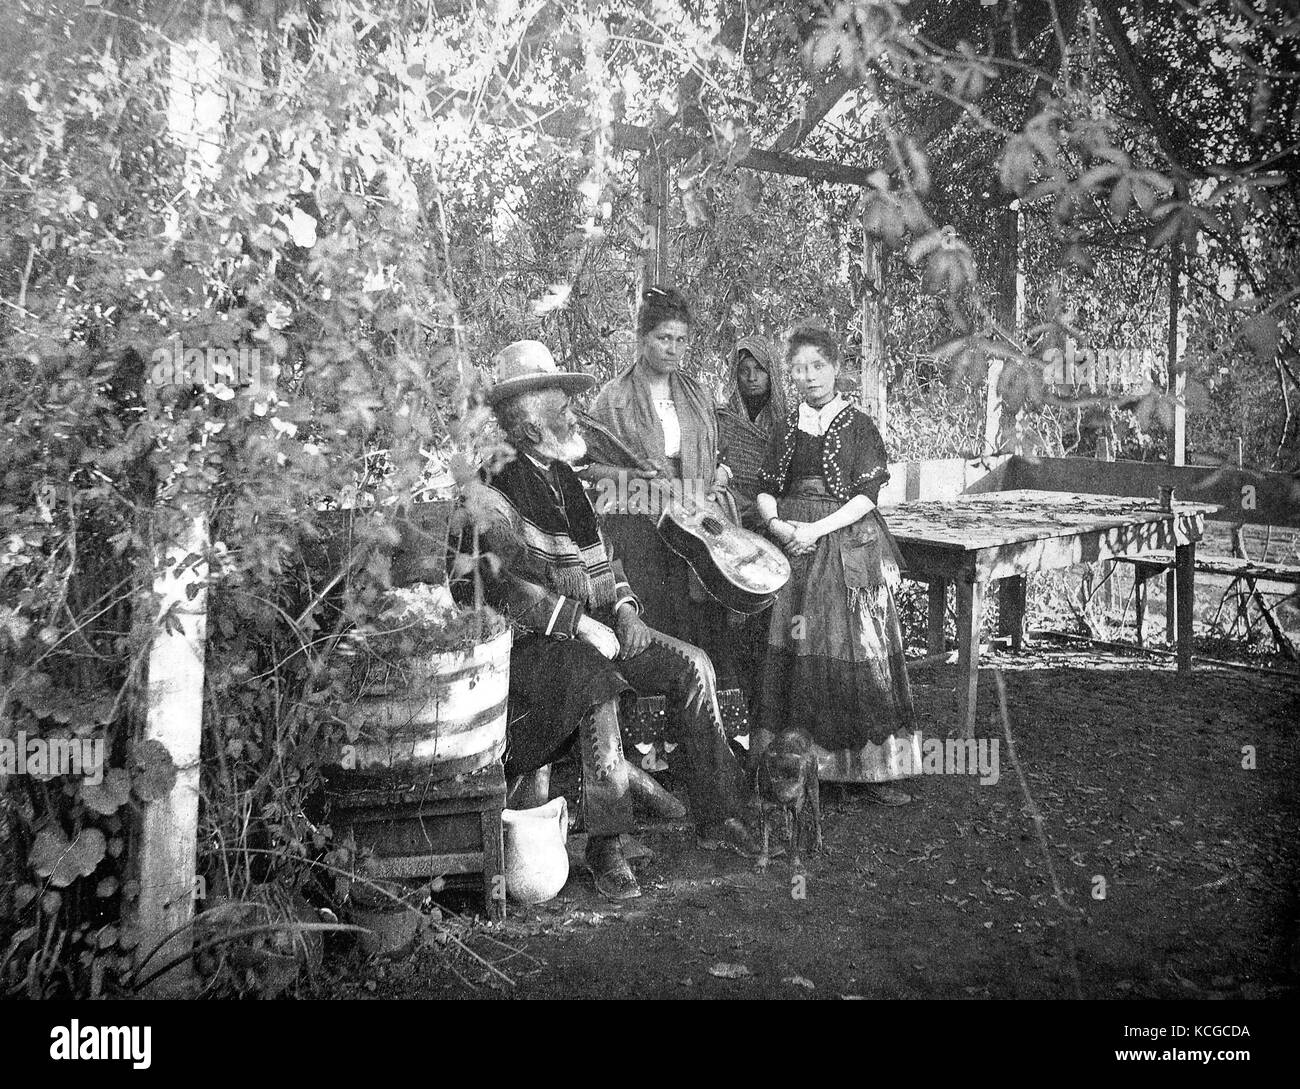 Vereinigte Staaten von Amerika, einer mexikanischen Familie, ihr demütiges Leben in Südkalifornien, digital verbesserte Reproduktion einer historischen Foto aus dem (geschätzten) Jahr 1899 Stockfoto